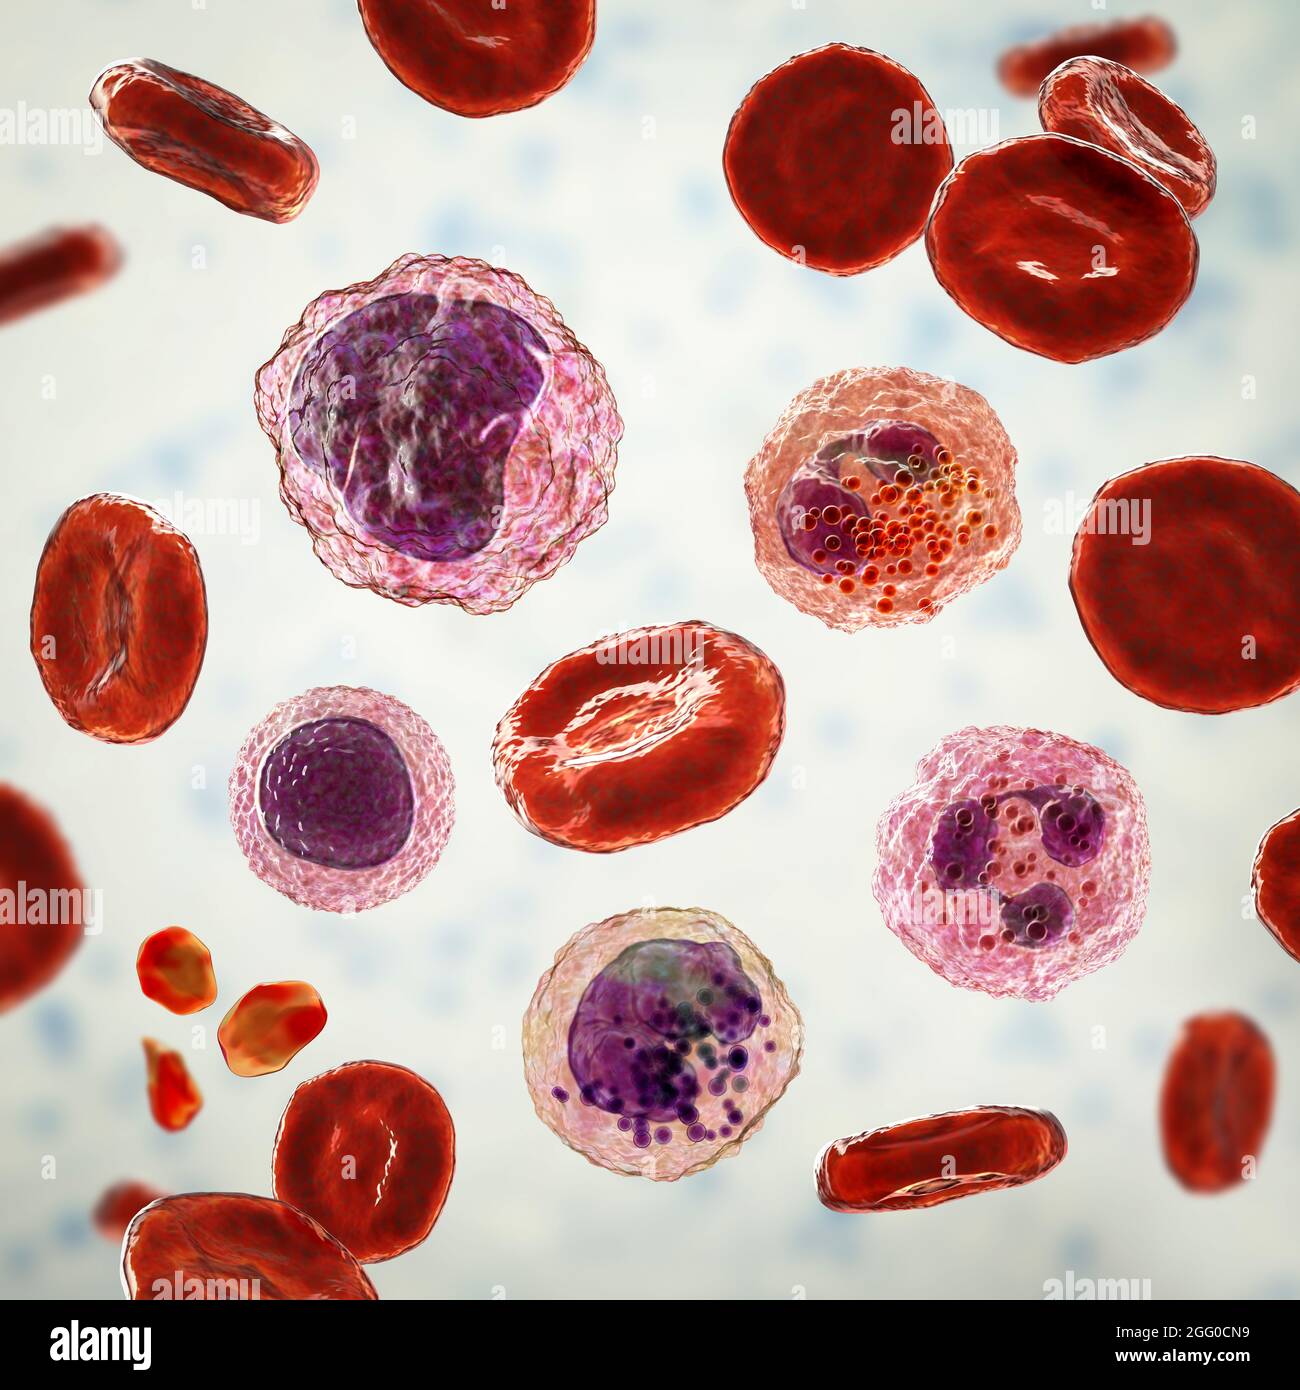 Illustration montrant différents types de cellules sanguines, érythrocytes, neutrophiles, monocytes, basophiles, éosinophiles, lymphocytes et plaquettes. Banque D'Images